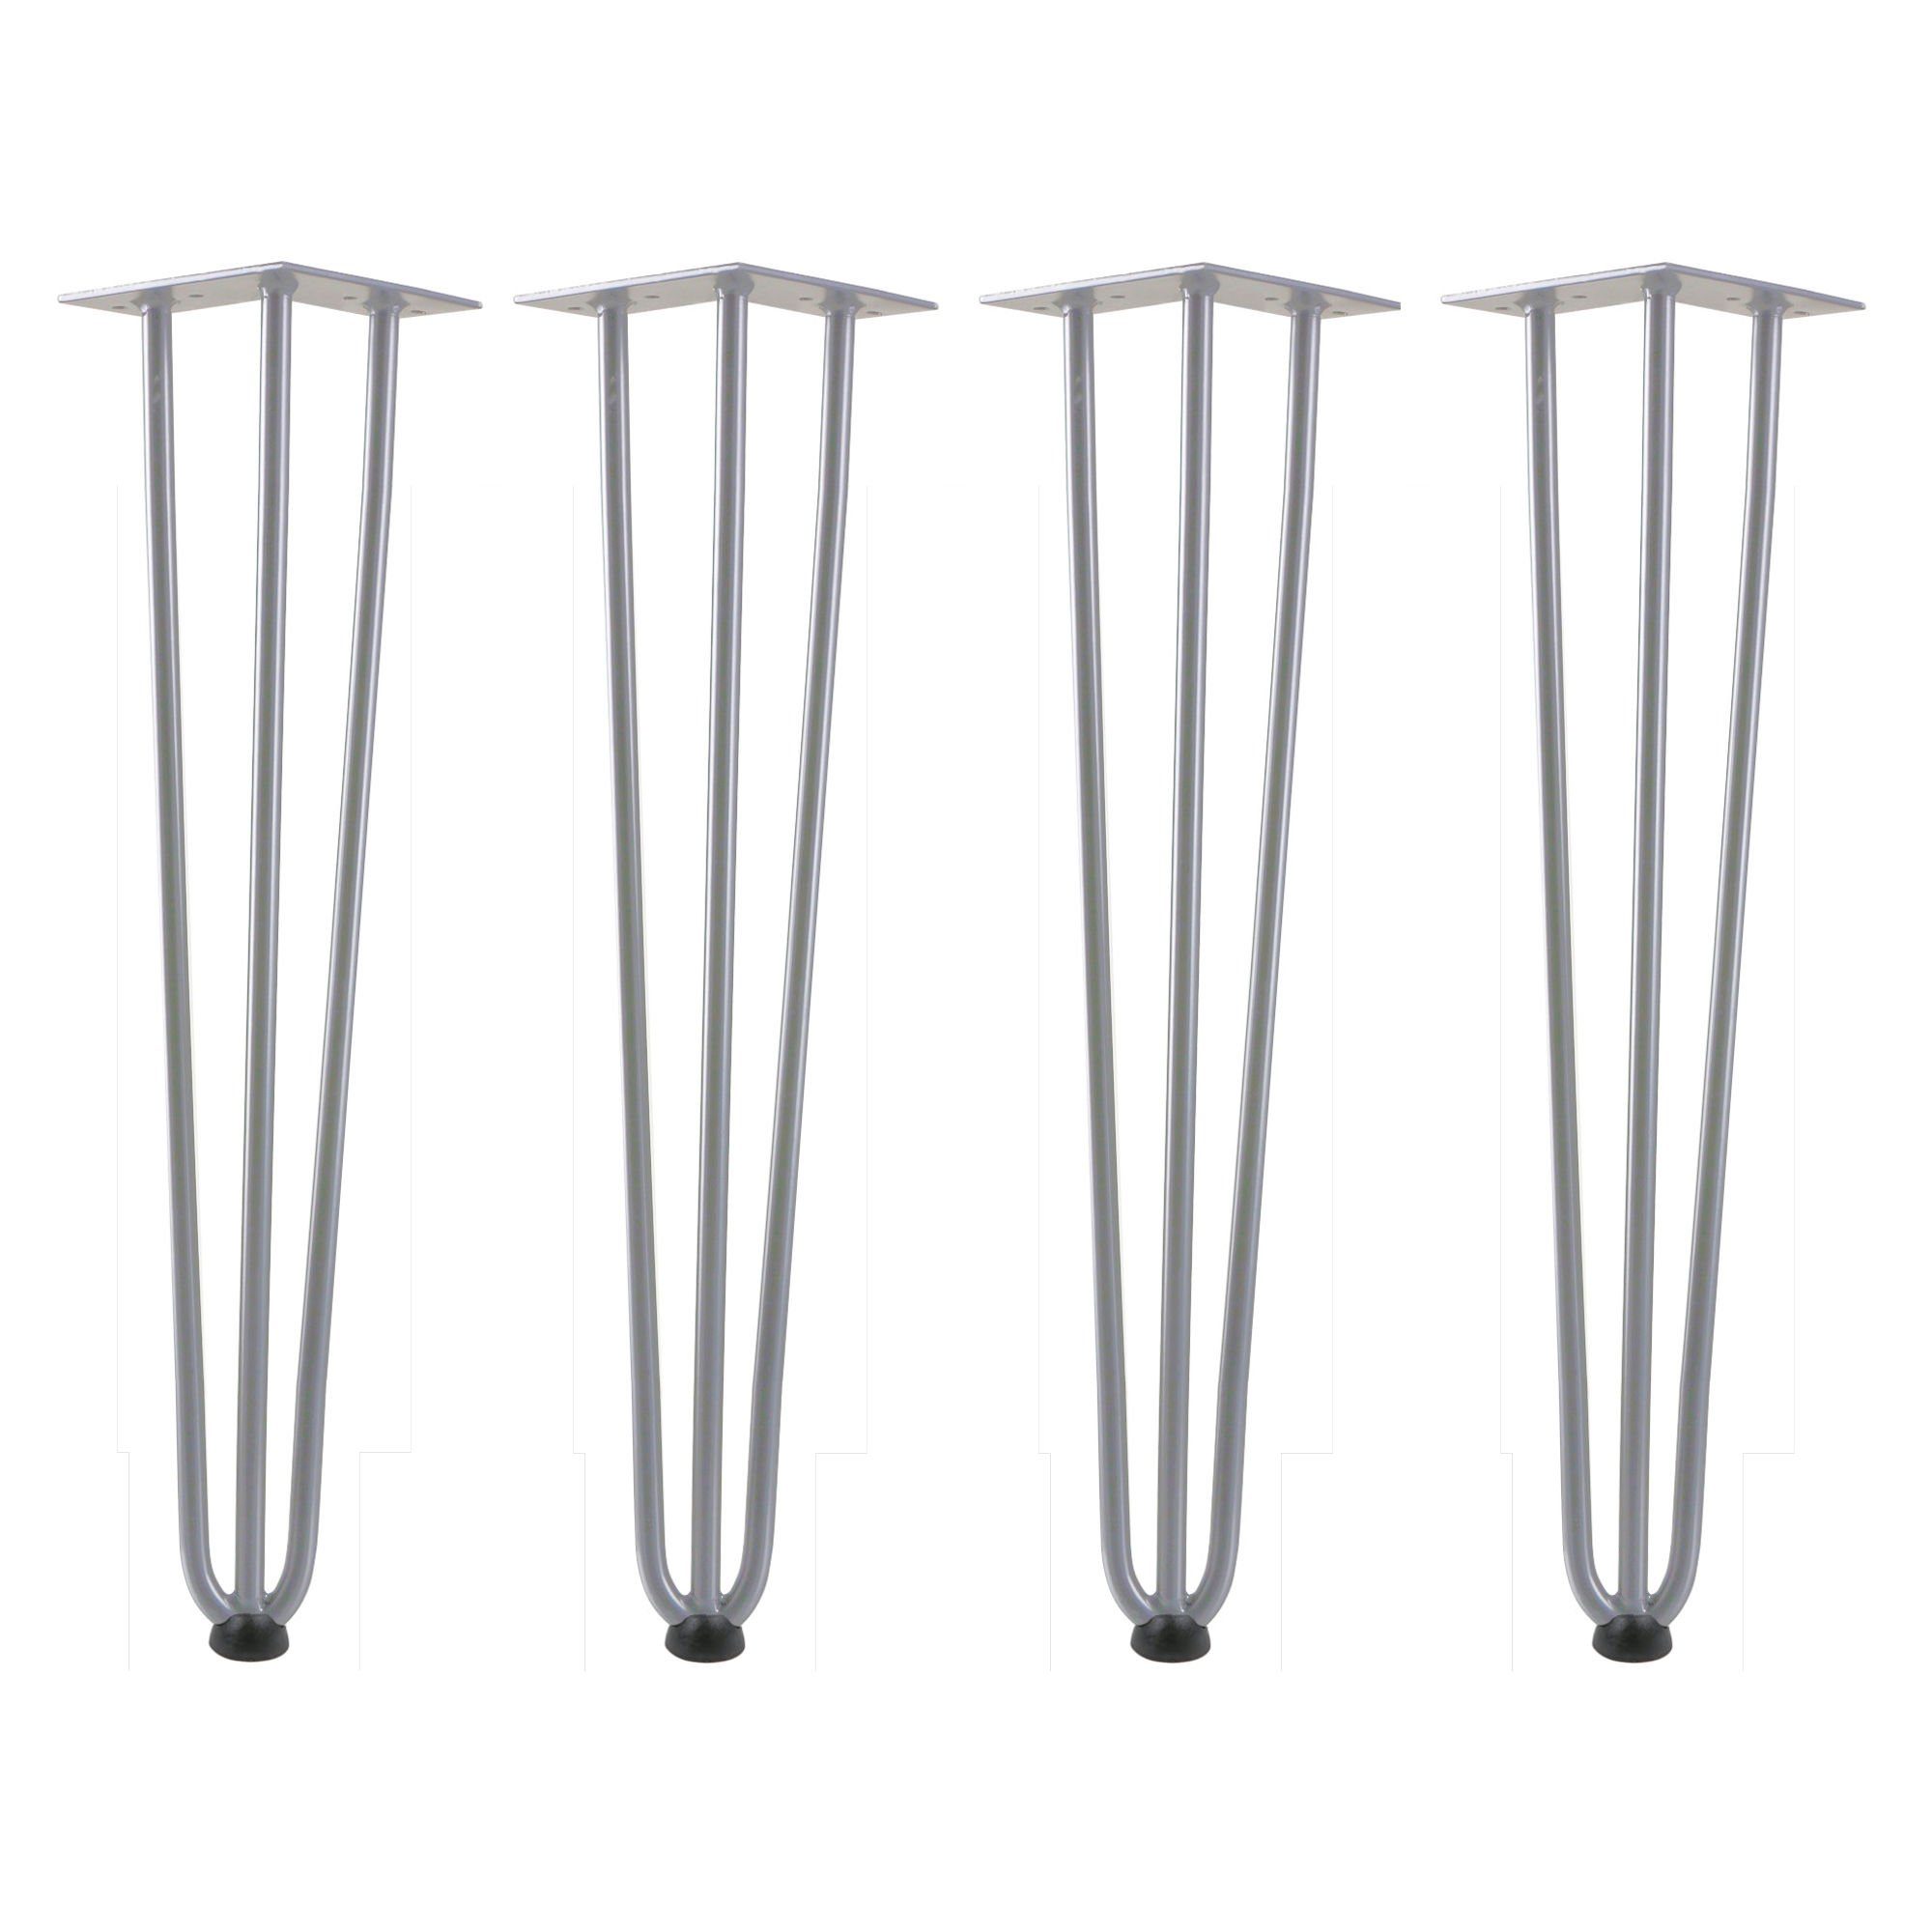 Zelsius Tischbein Hairpin Legs, 4er Set, 60 cm, grau, Tischbeine aus Stahl, 3 Streben